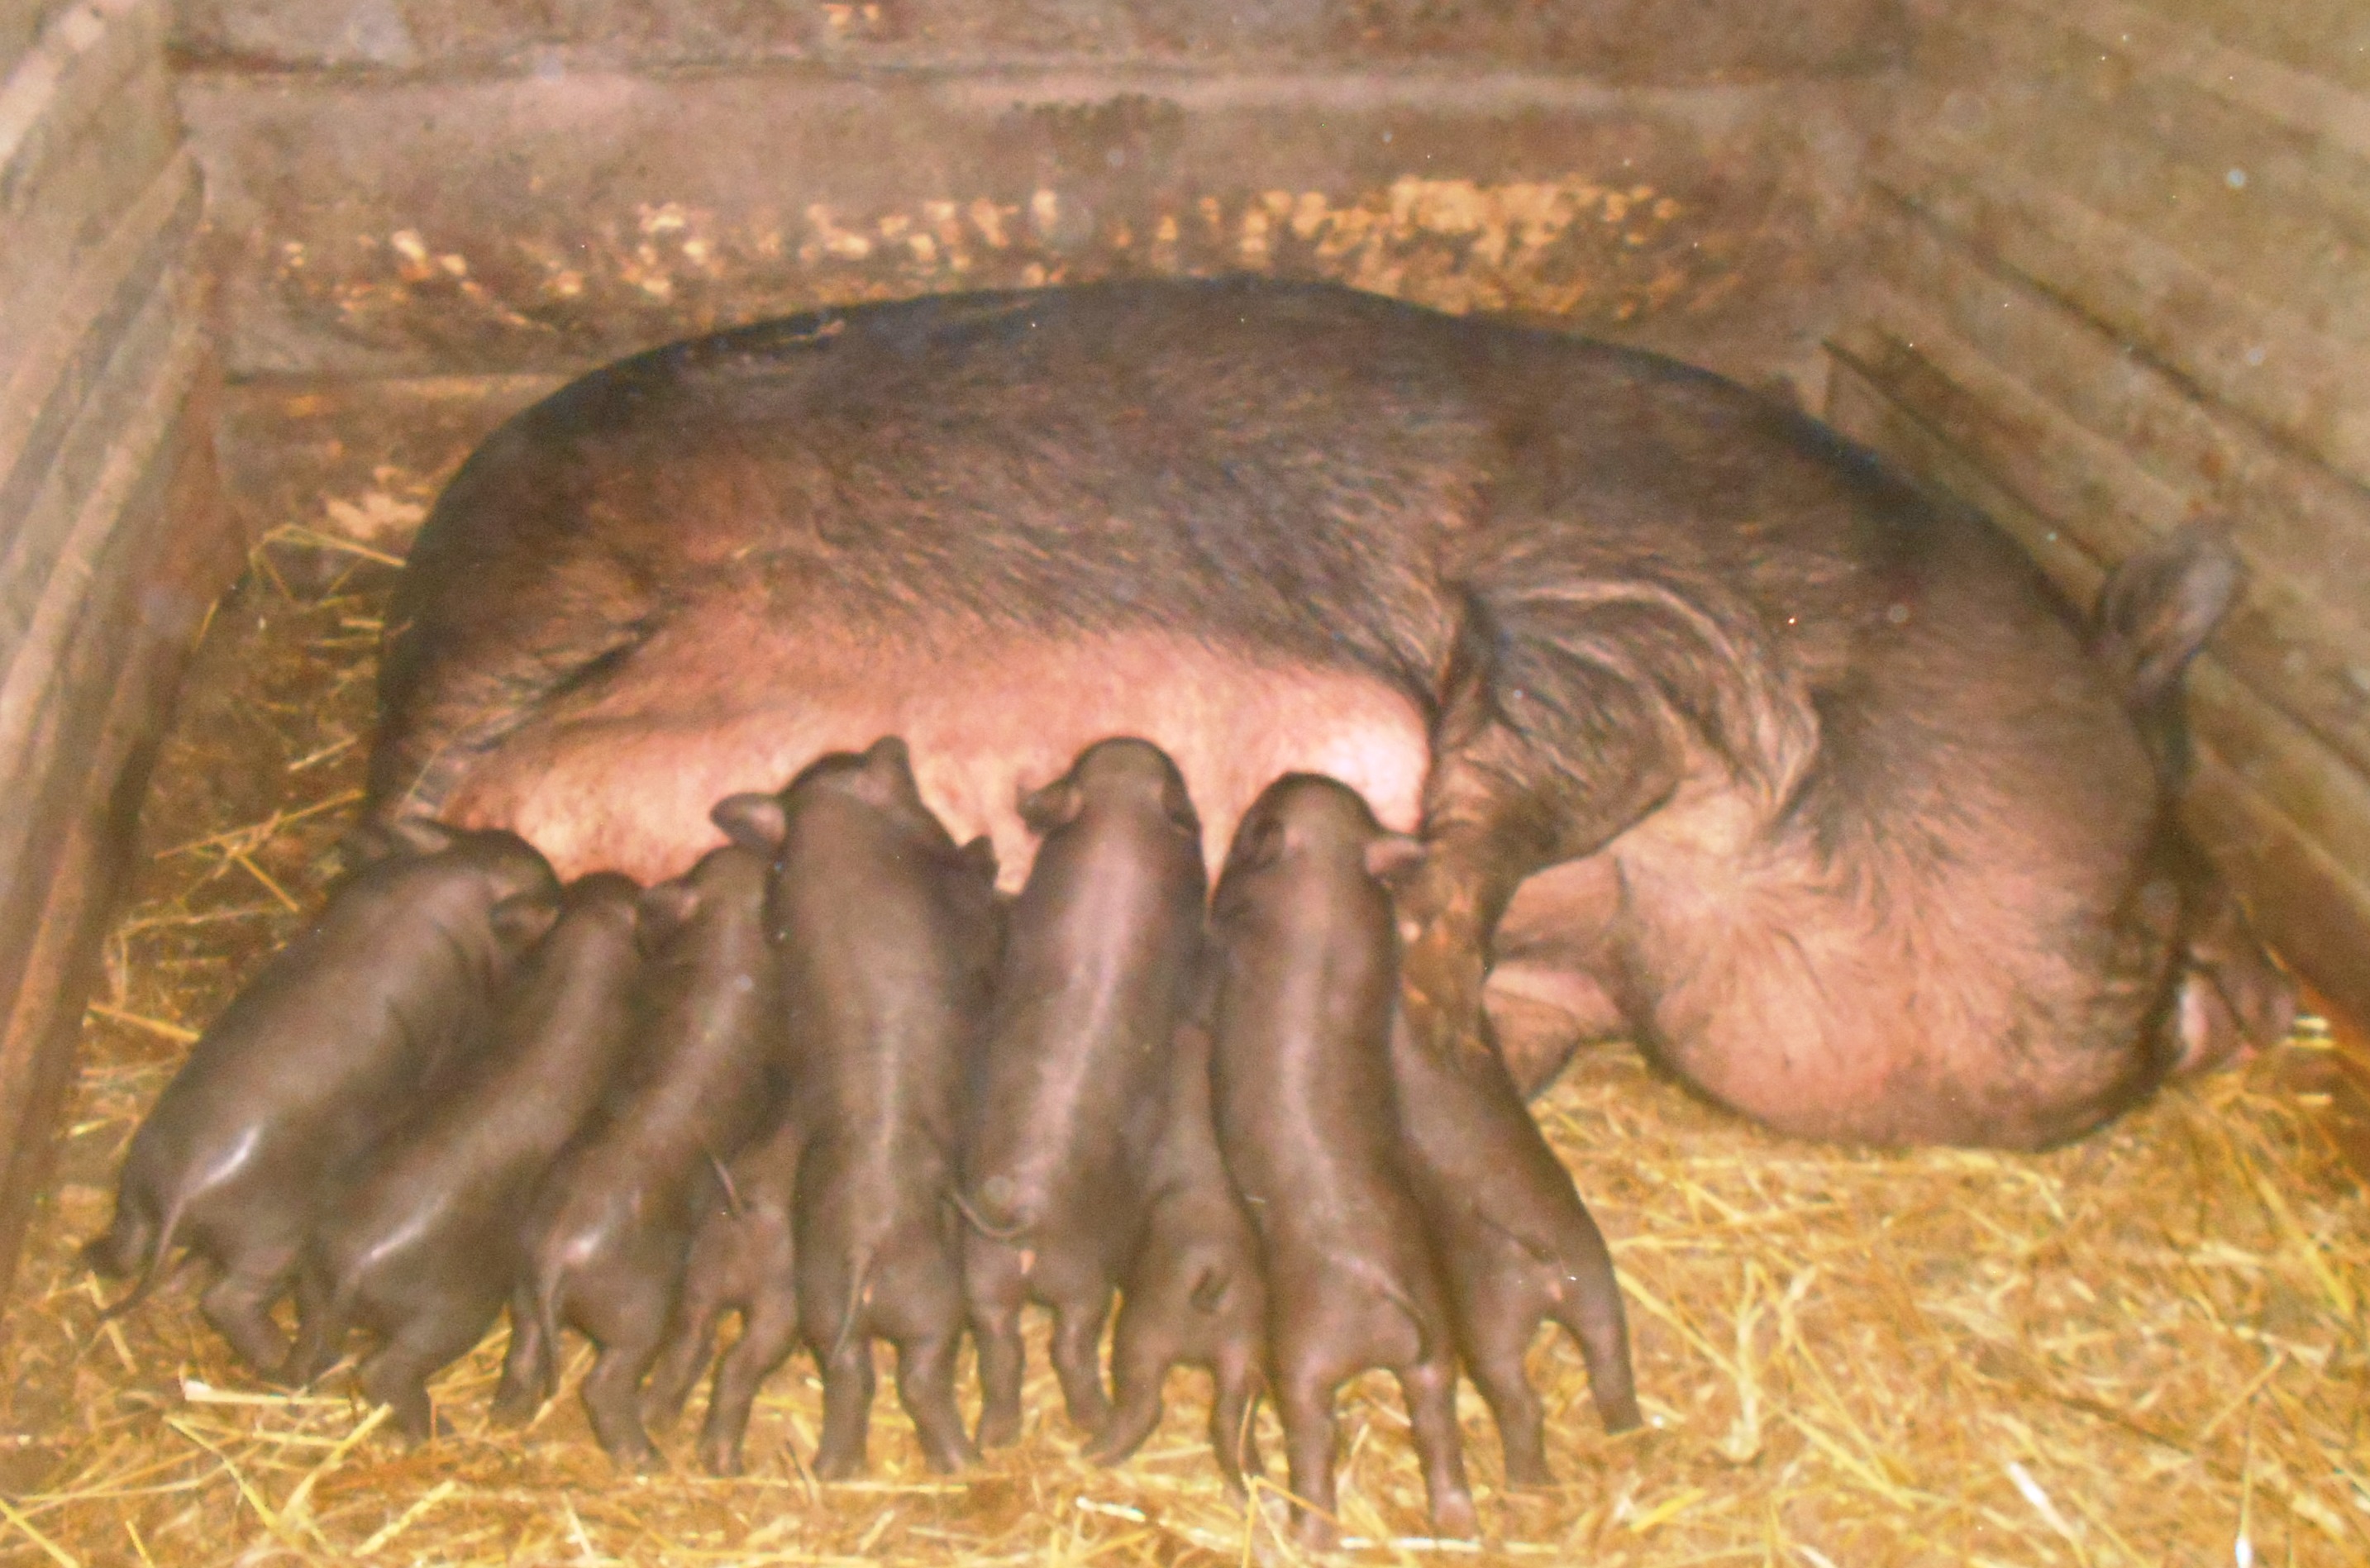 Разведение вислобрюхих вьетнамских свиней в домашних условиях